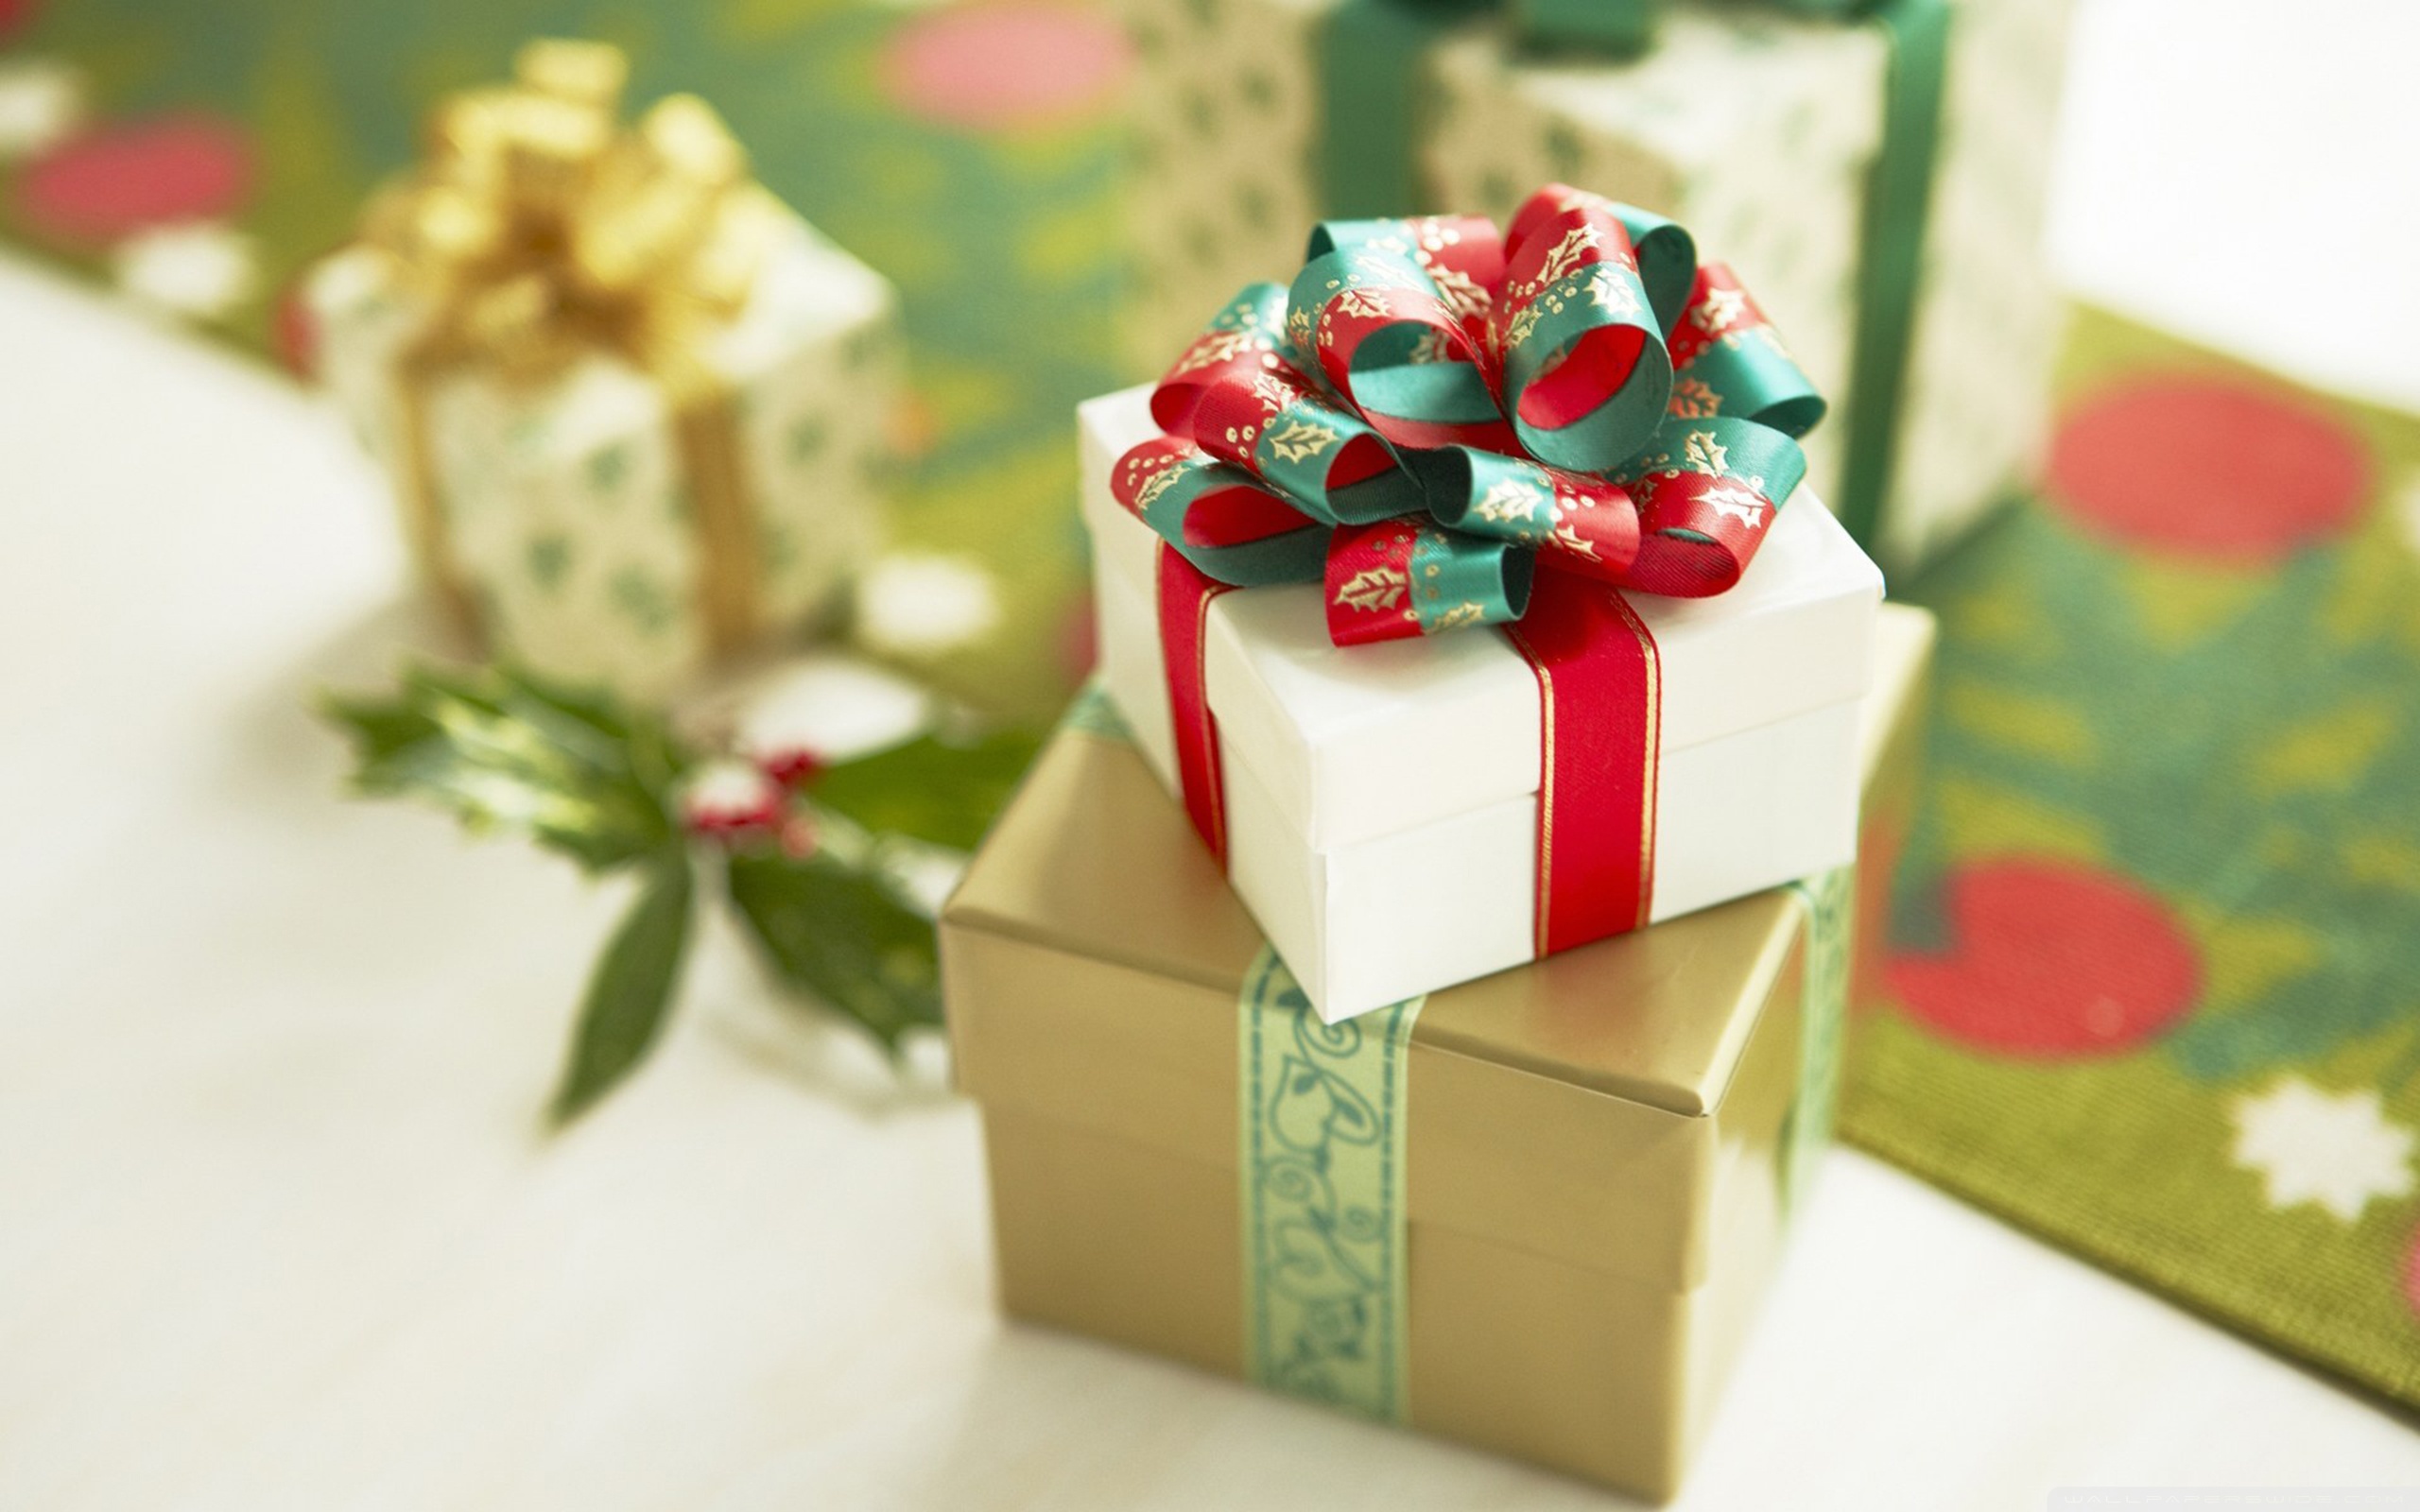 〓 高清晰圣诞节礼物包装彩蝶节壁纸::当前为类型:::欧莱凯图库素材酷图